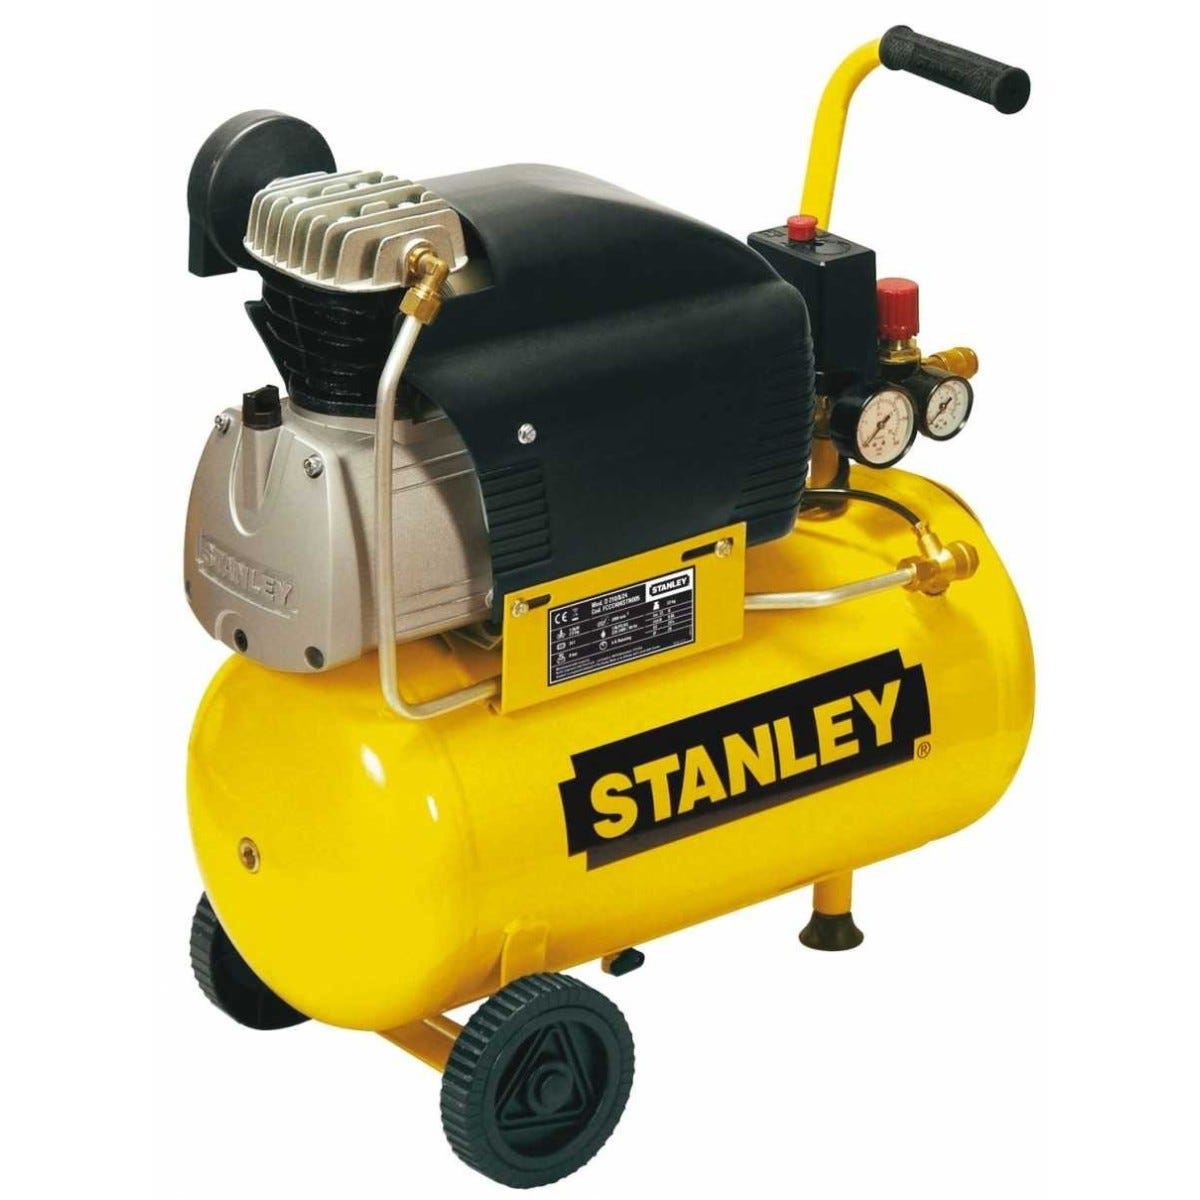 Compresseur Stanley 3 CV avec cuve verticale 90 litres